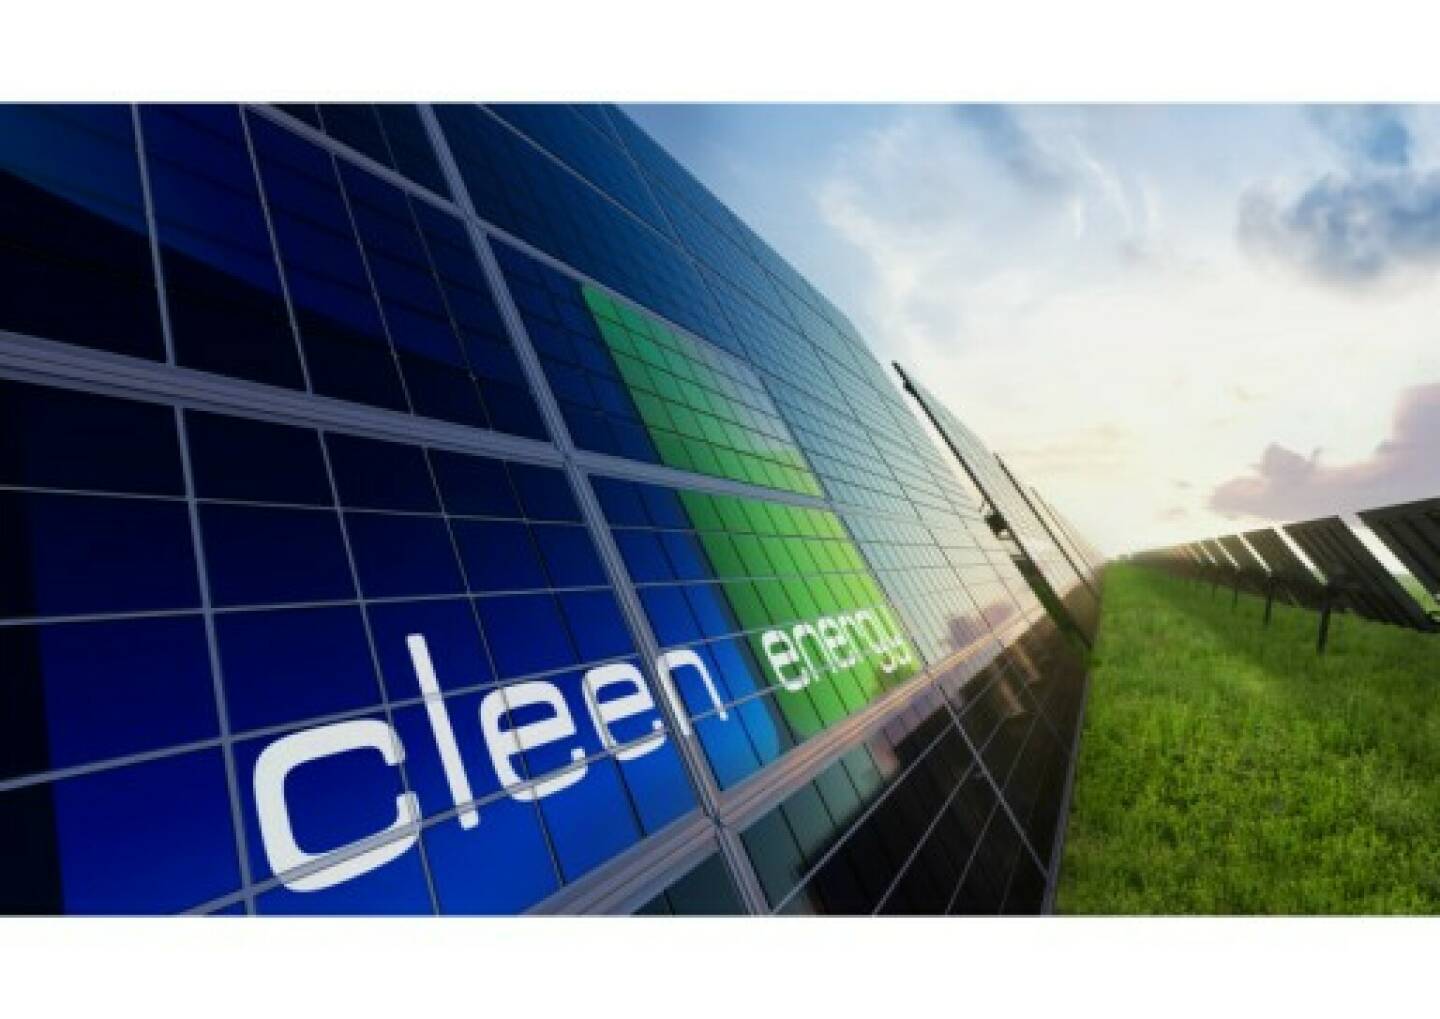 Cleen Energy, Credit: Cleen Energy